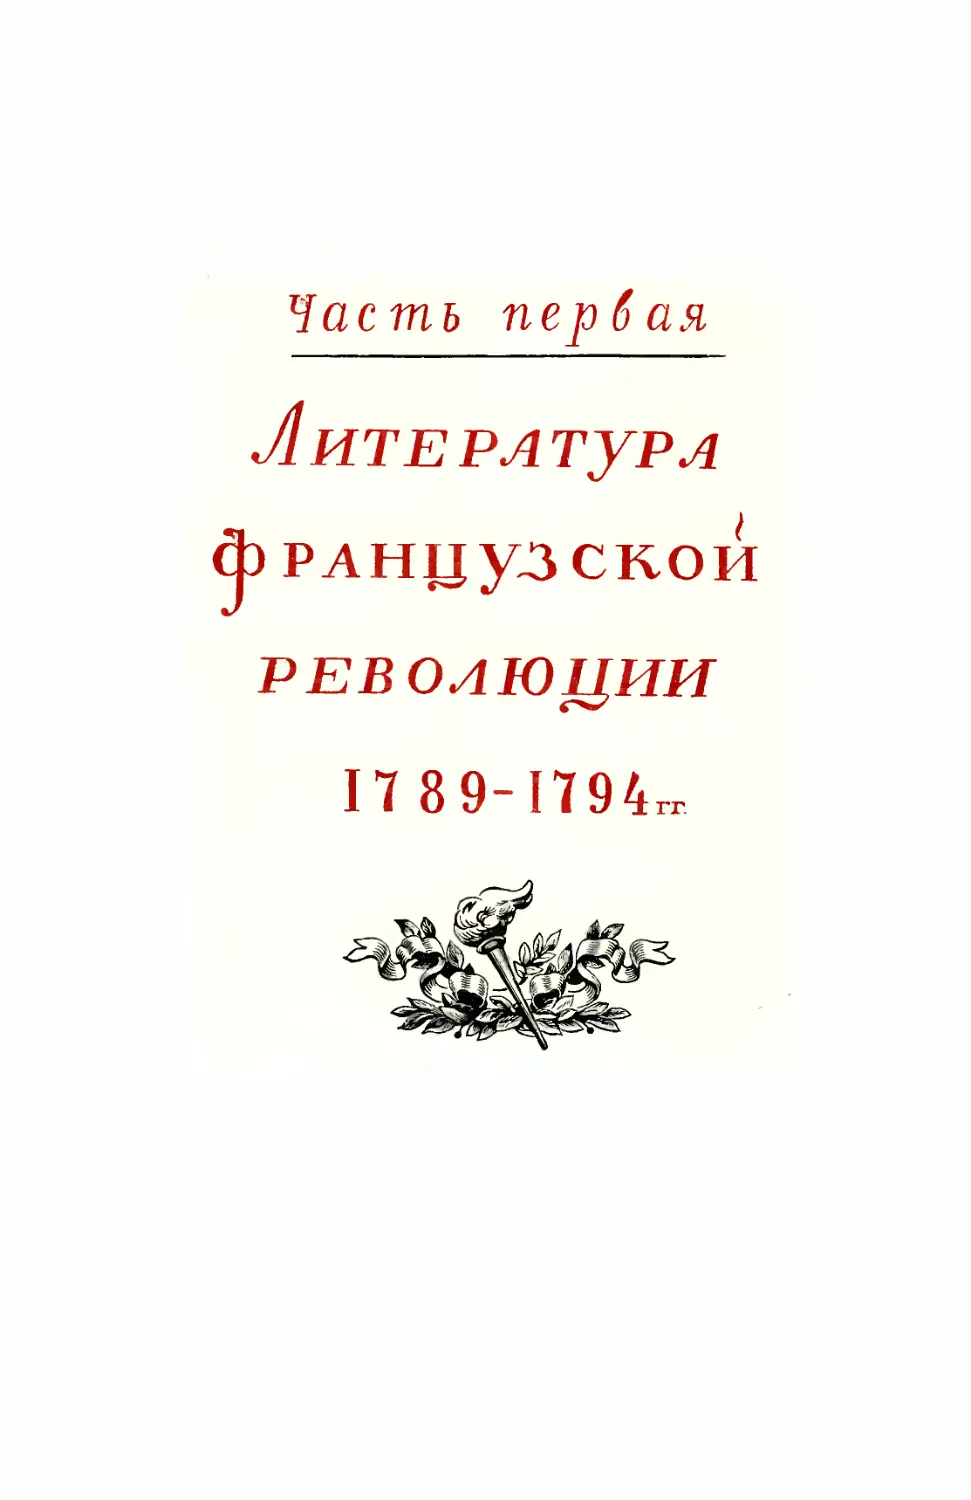 Часть первая. Литература Фарнцузской революции 1789-1794 гг.